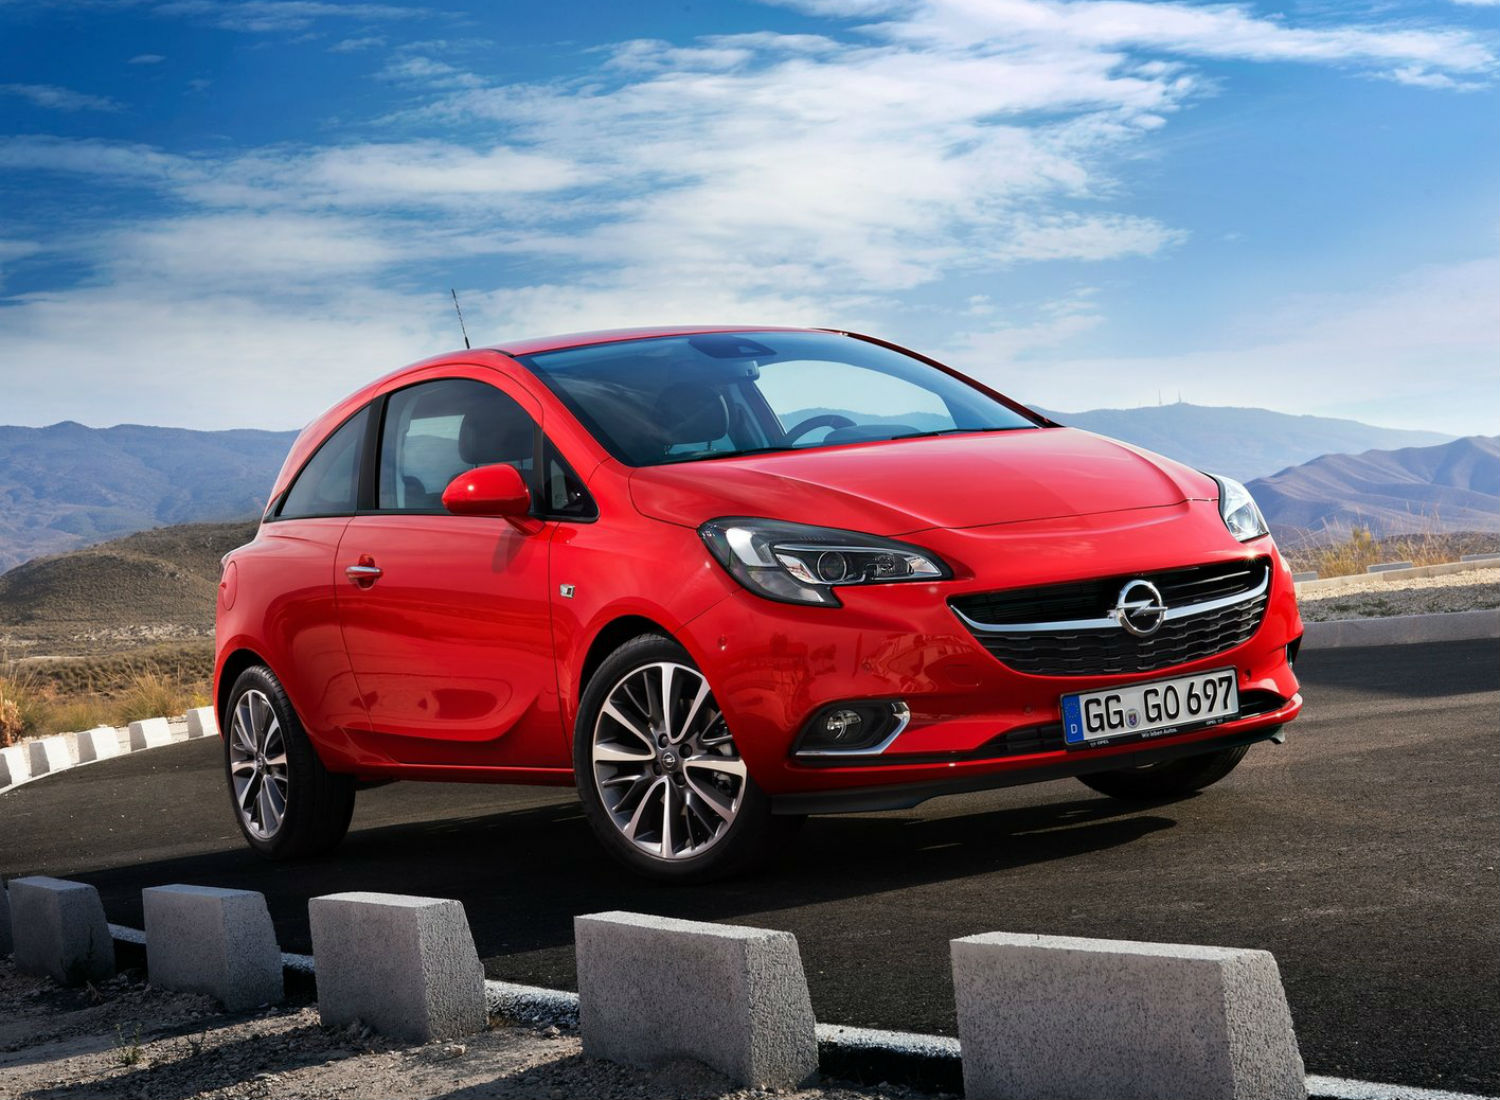 Historia del Opel Corsa: todas las generaciones